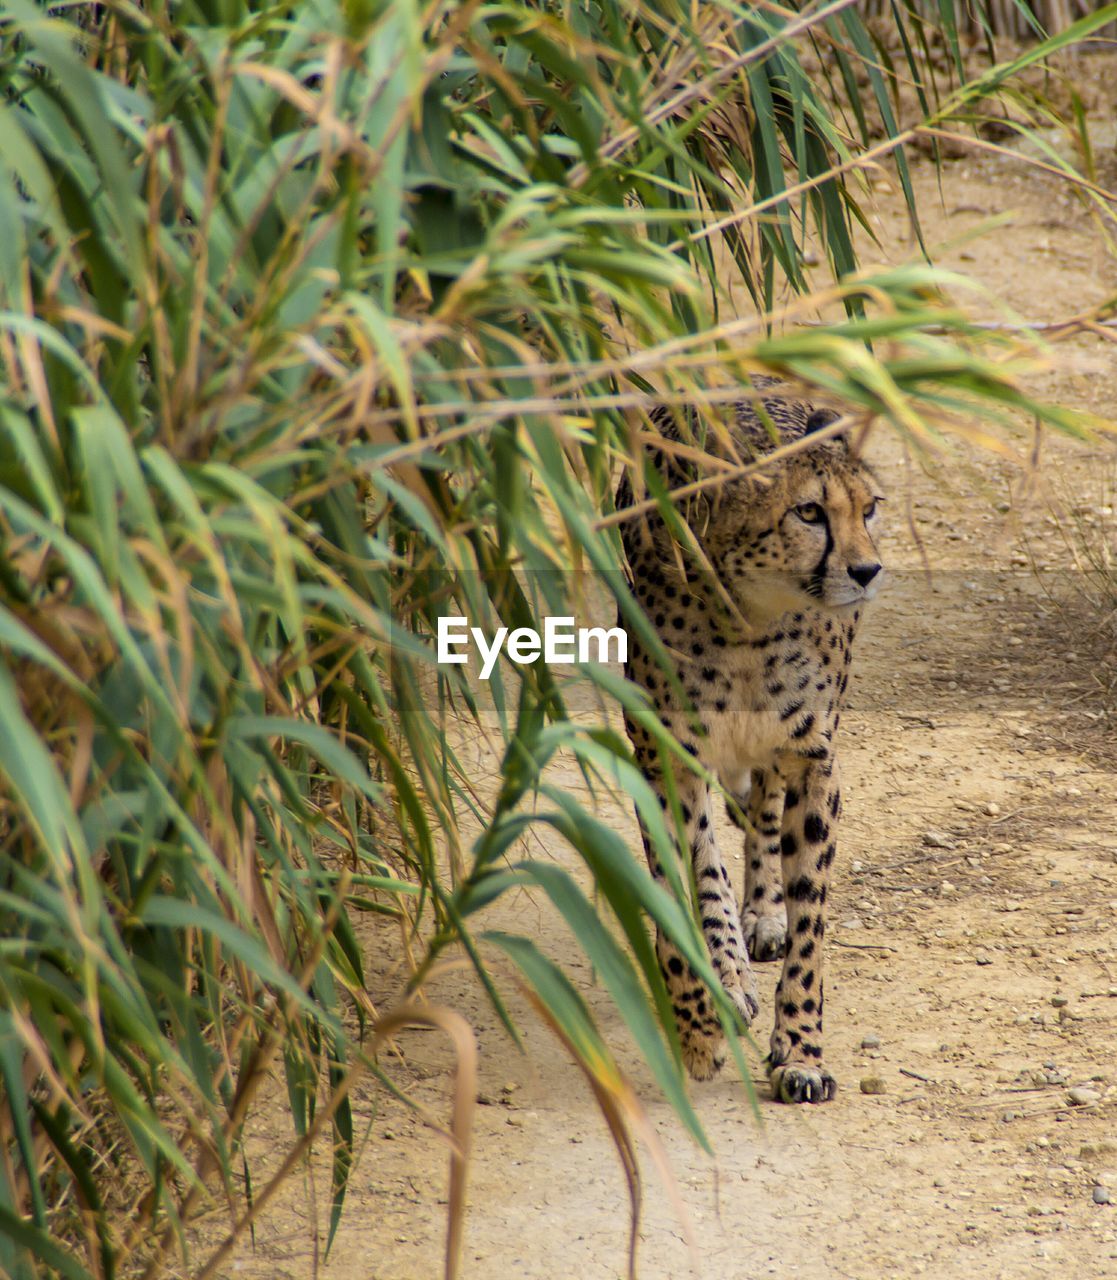 Cheetah walking by plants on field